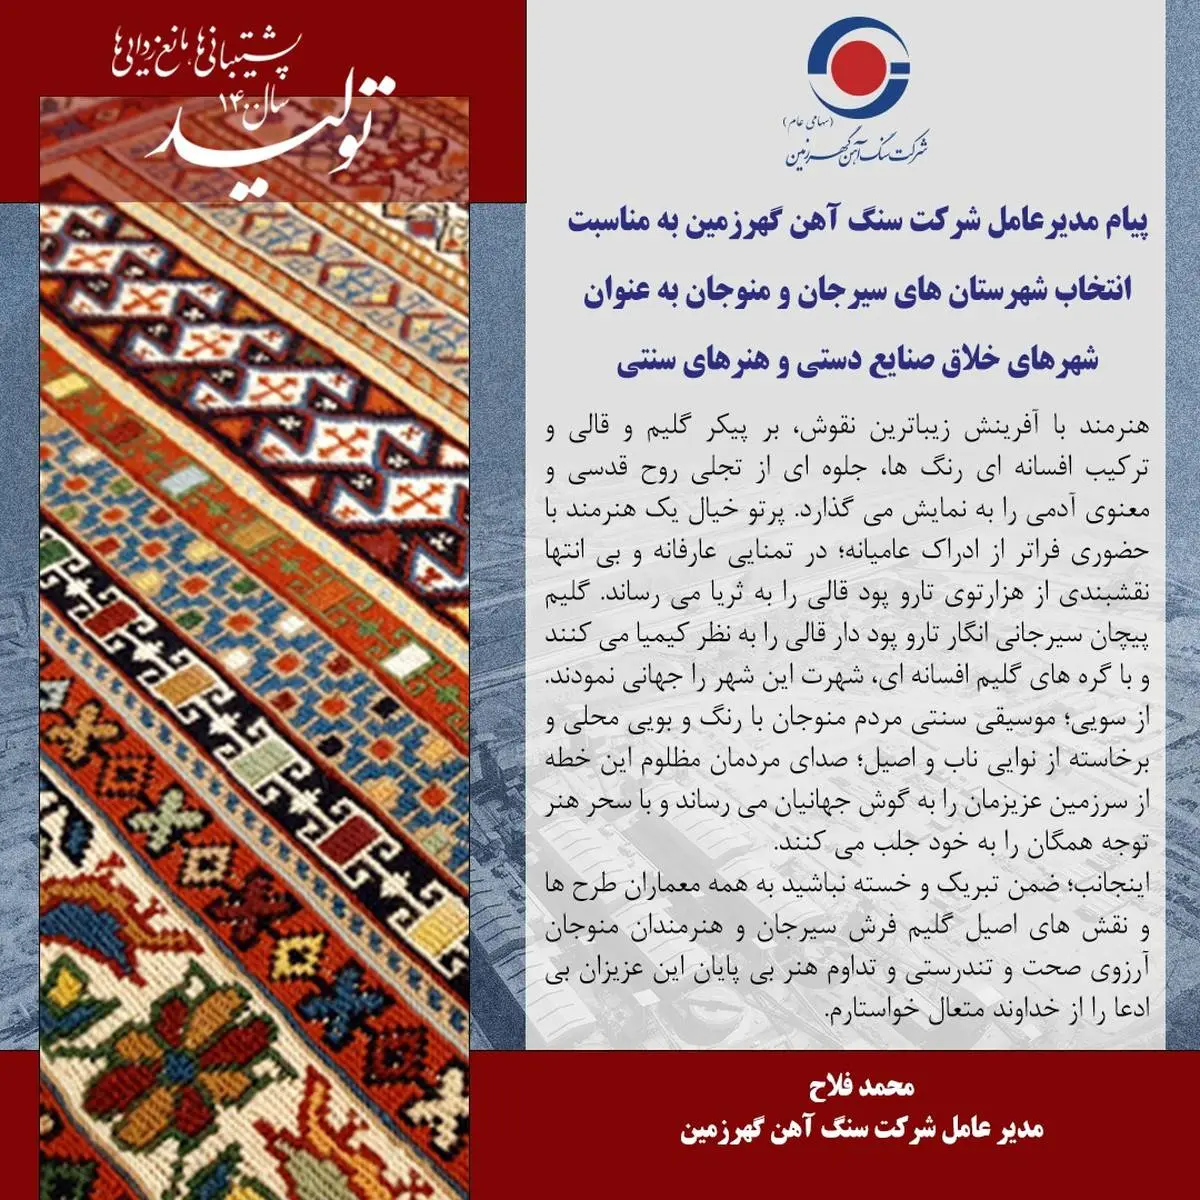 انتخاب شهرستان های سیرجان و منوجان به عنوان شهرهای خلاق صنایع دستی و هنرهای سنتی